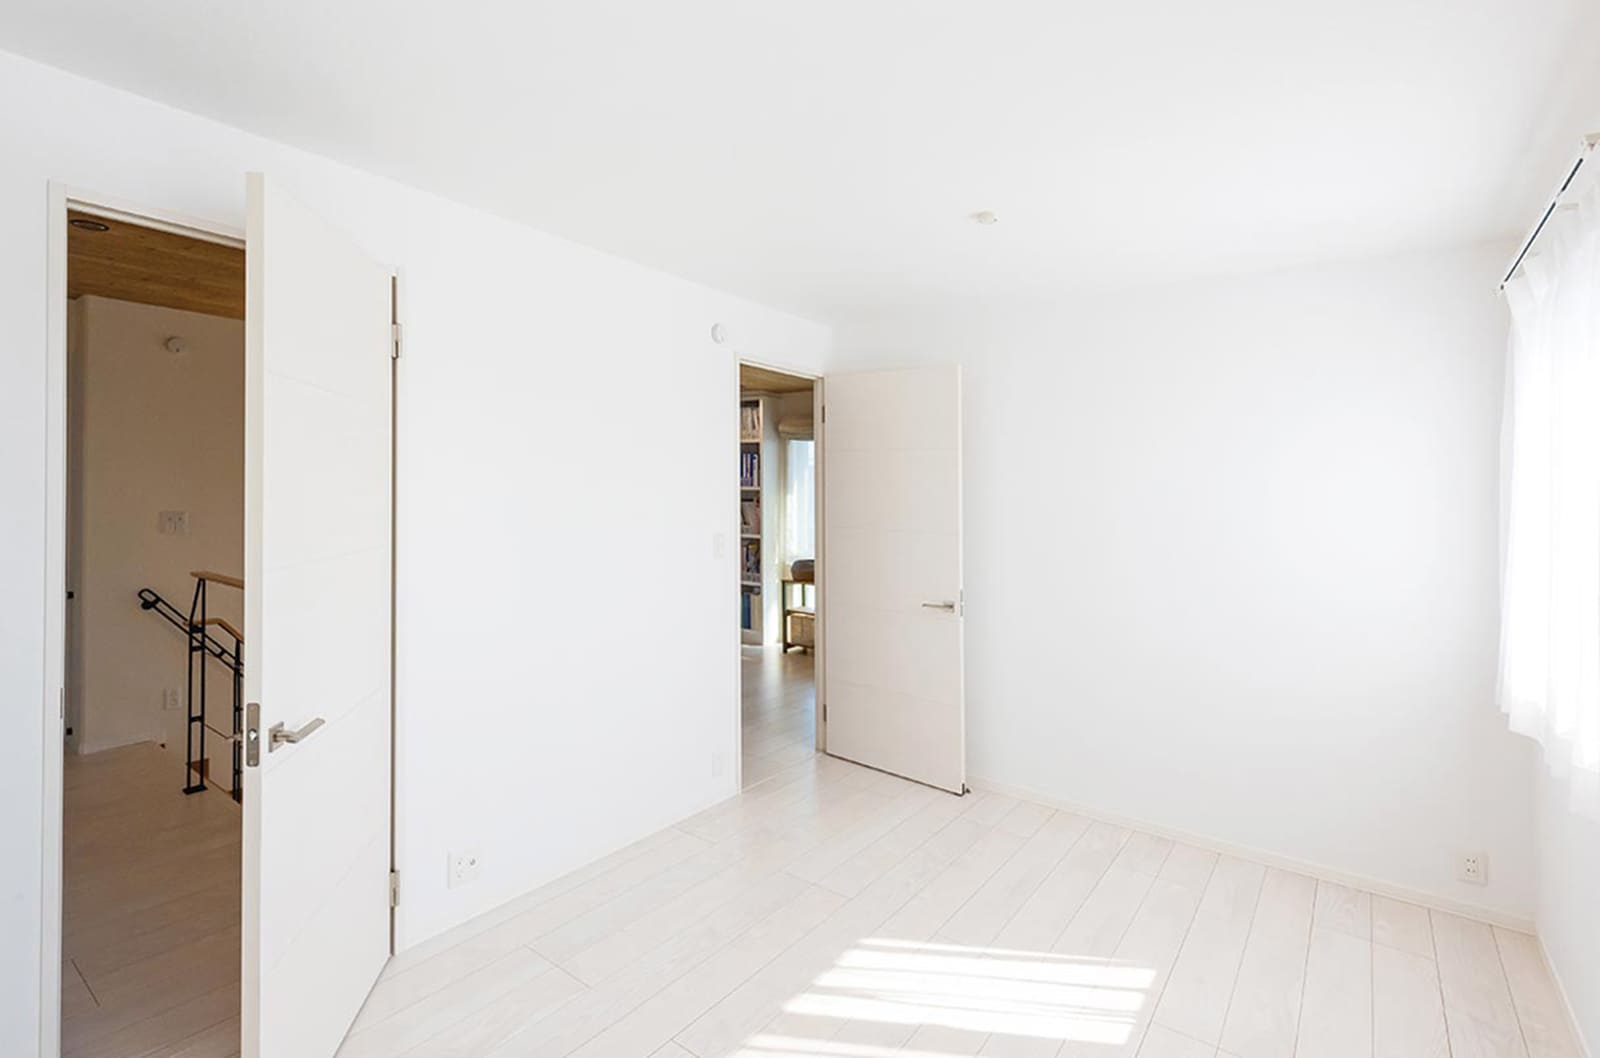 東京セキスイハイム建築実例_間仕切って2部屋として使用できるようにドアを2つ設けた子供室